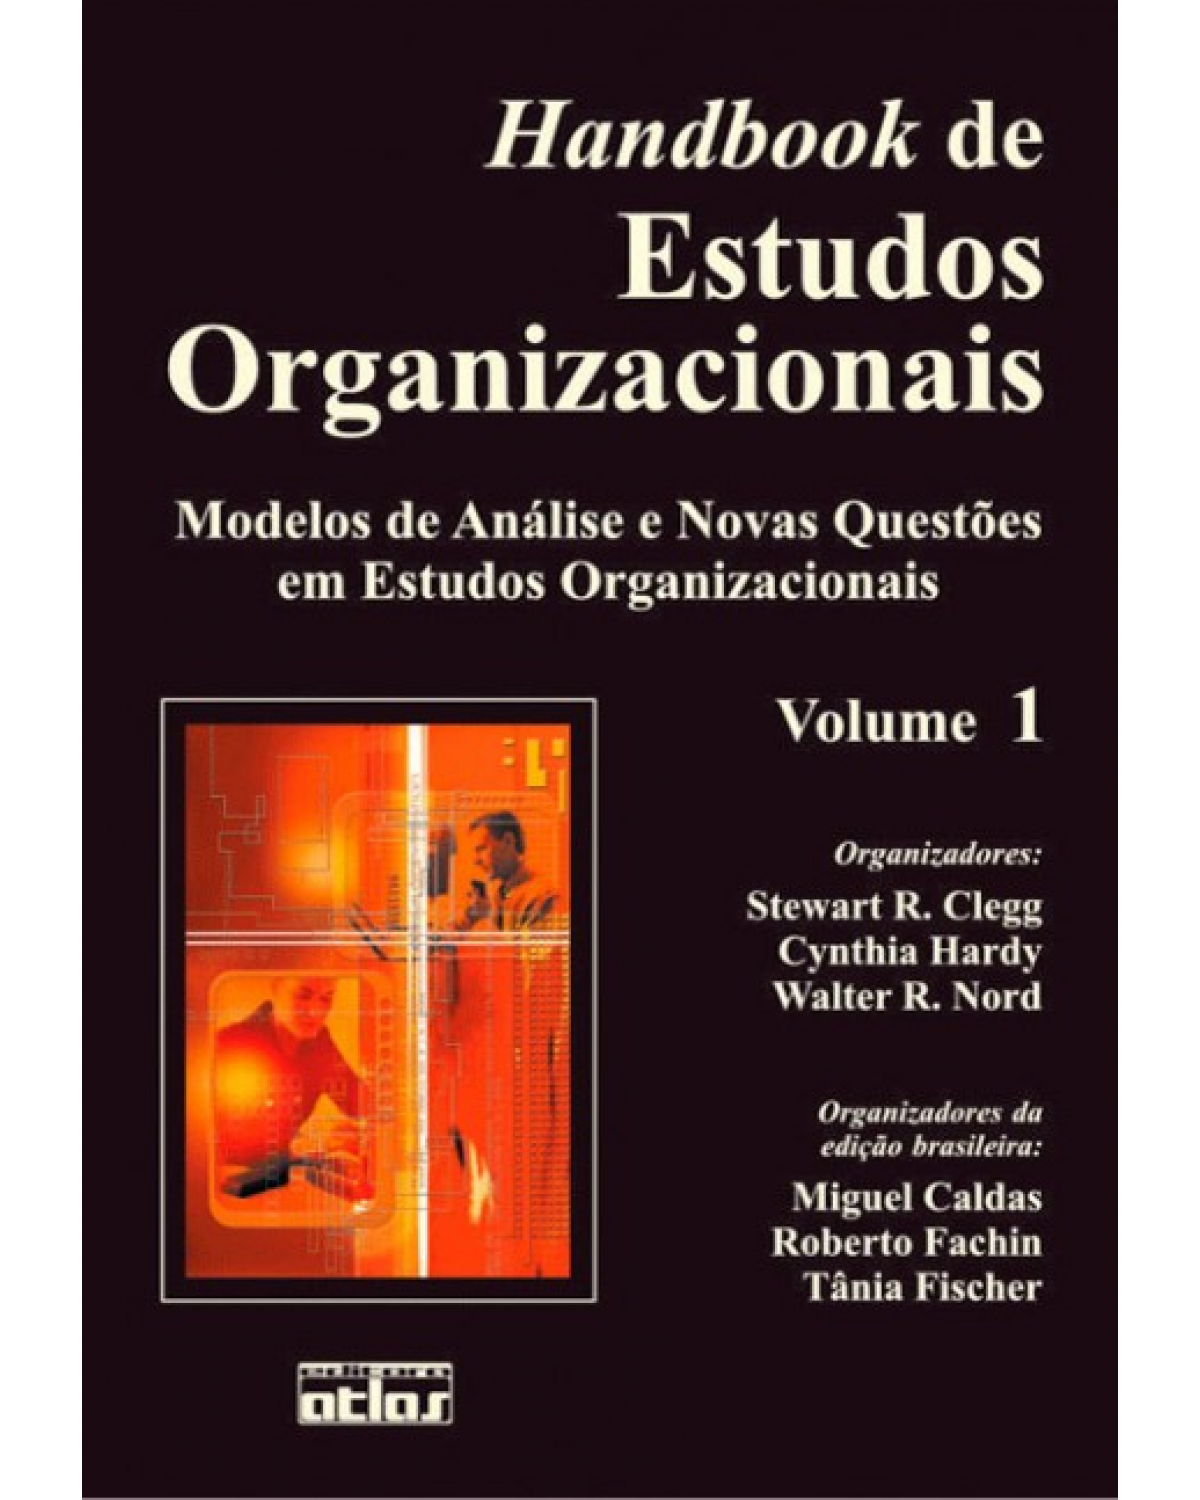 Handbook de estudos organizacionais - Volume 1: Modelos de análise e novas questões em estudos organizacionais - 1ª Edição | 1999